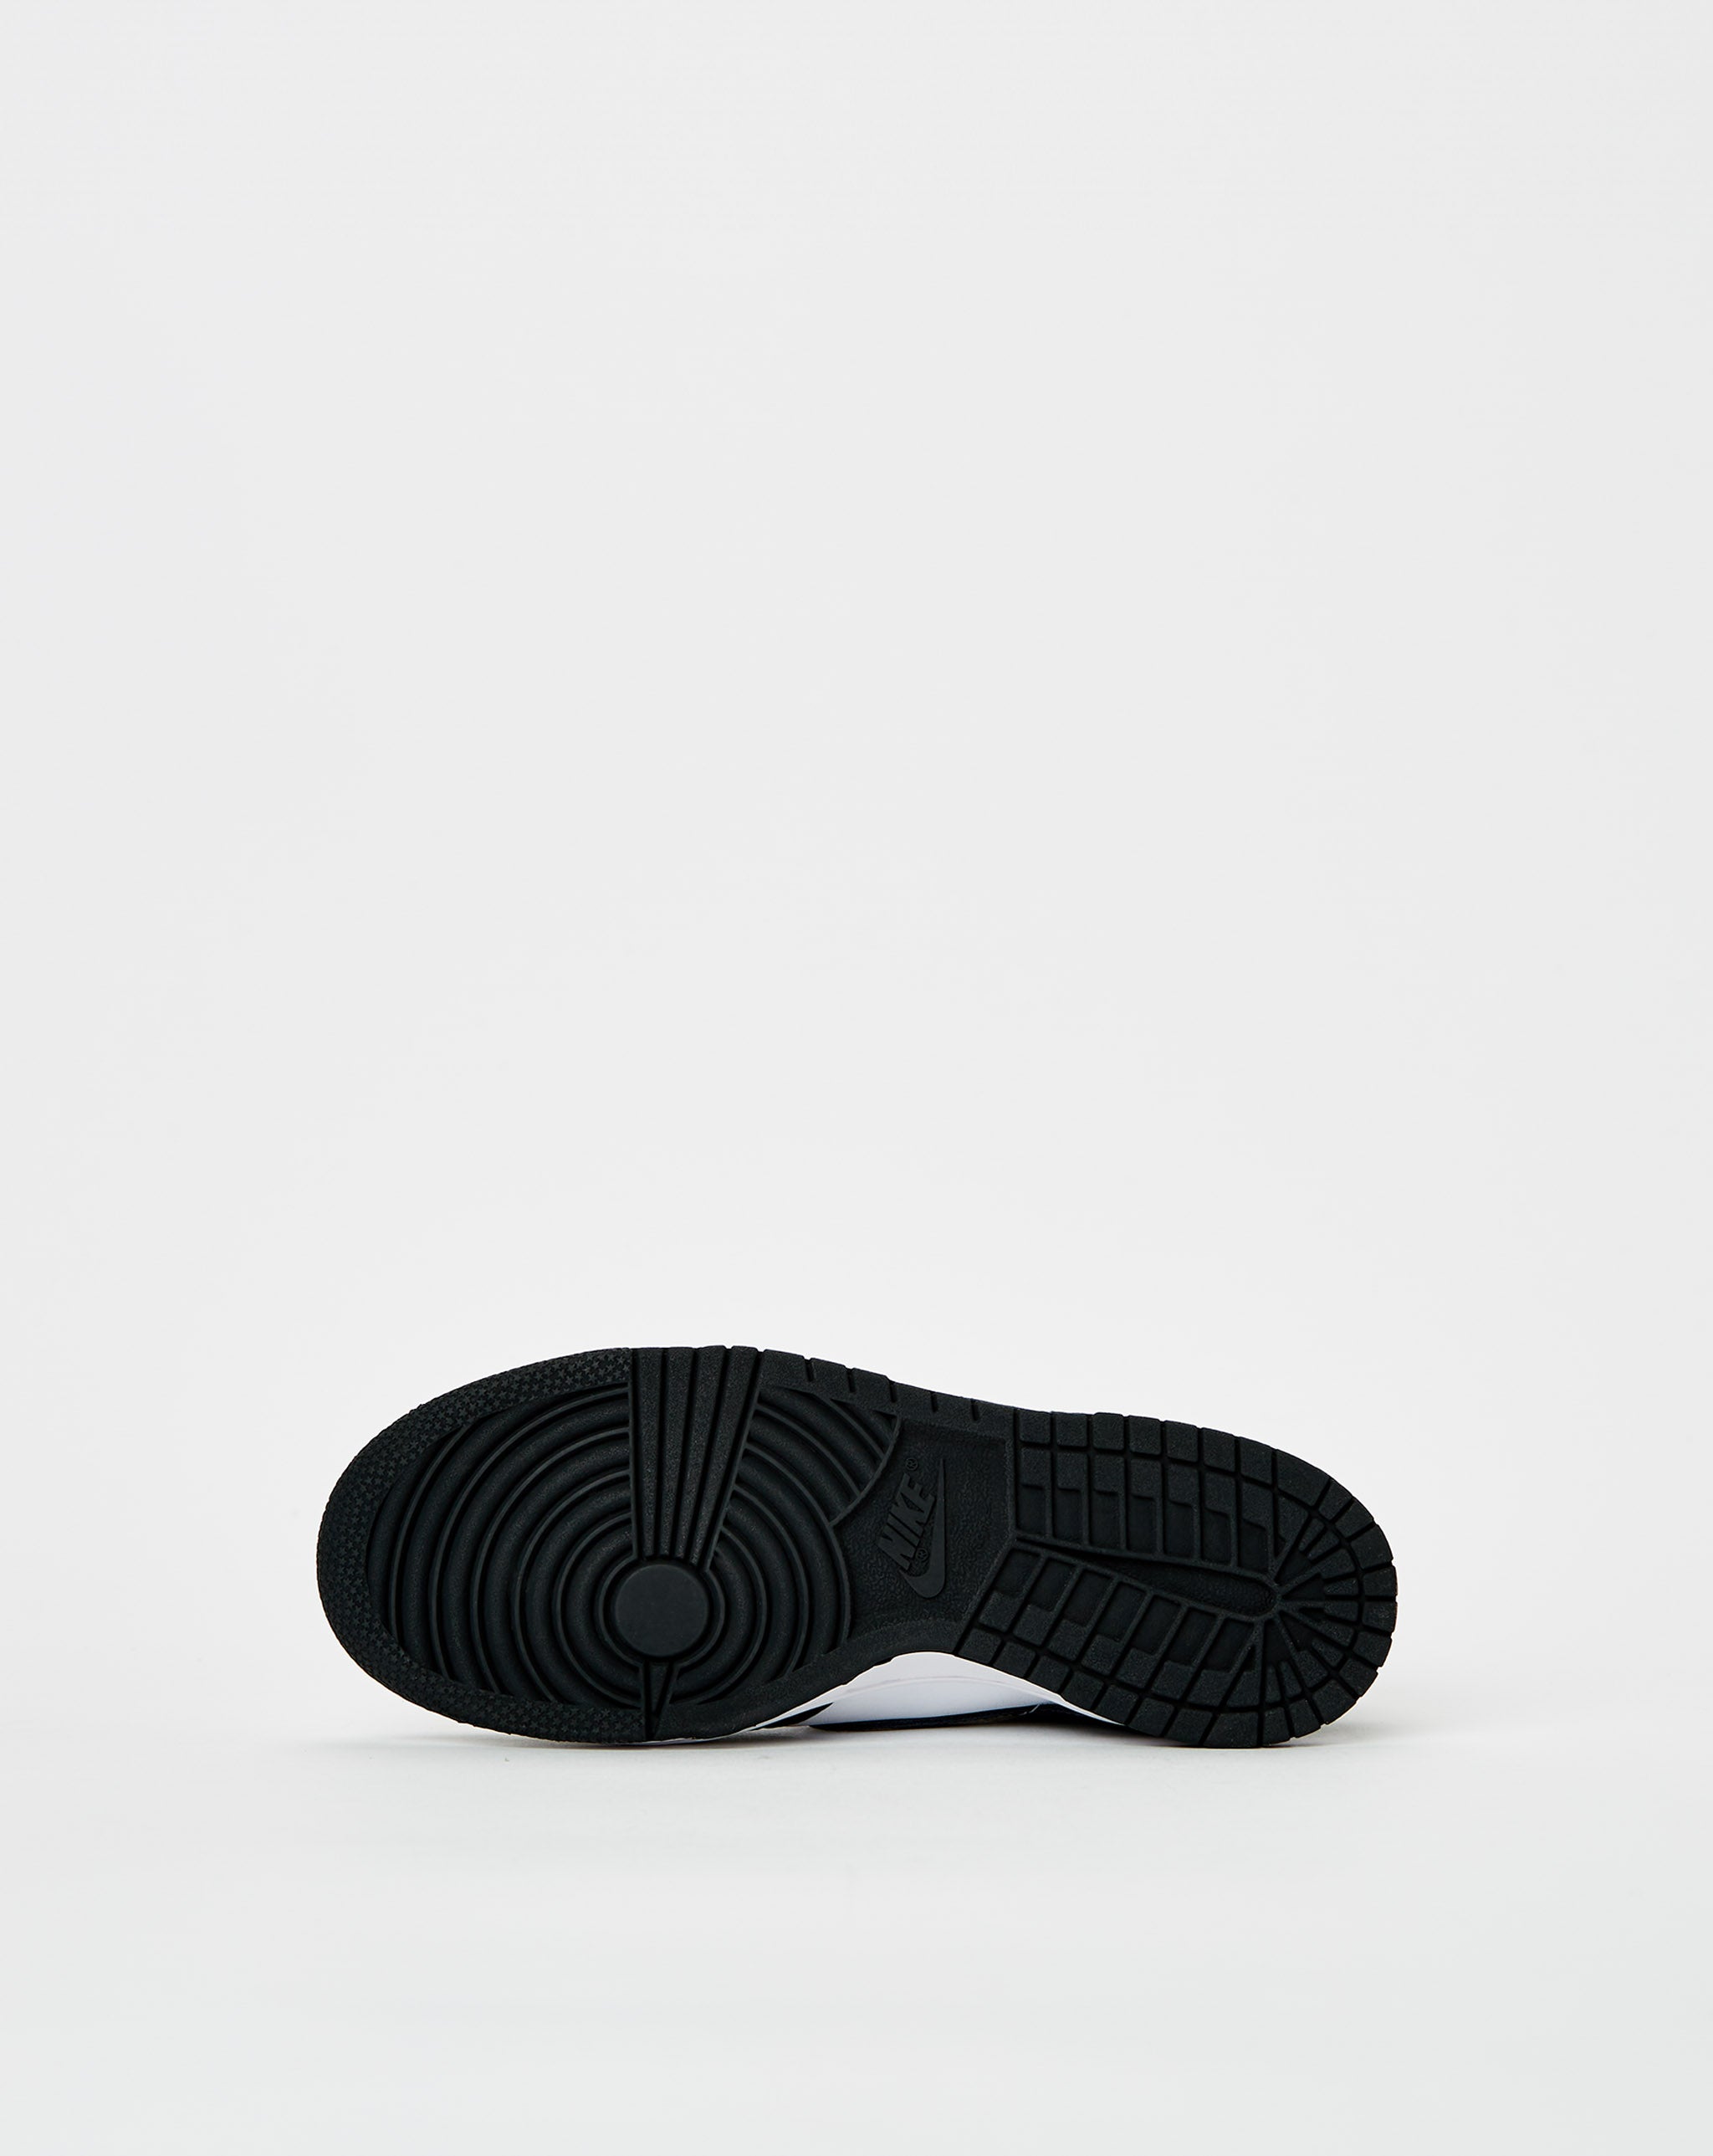 Nike Dunk Low Retro 'Black White'  - Cheap Urlfreeze Jordan outlet